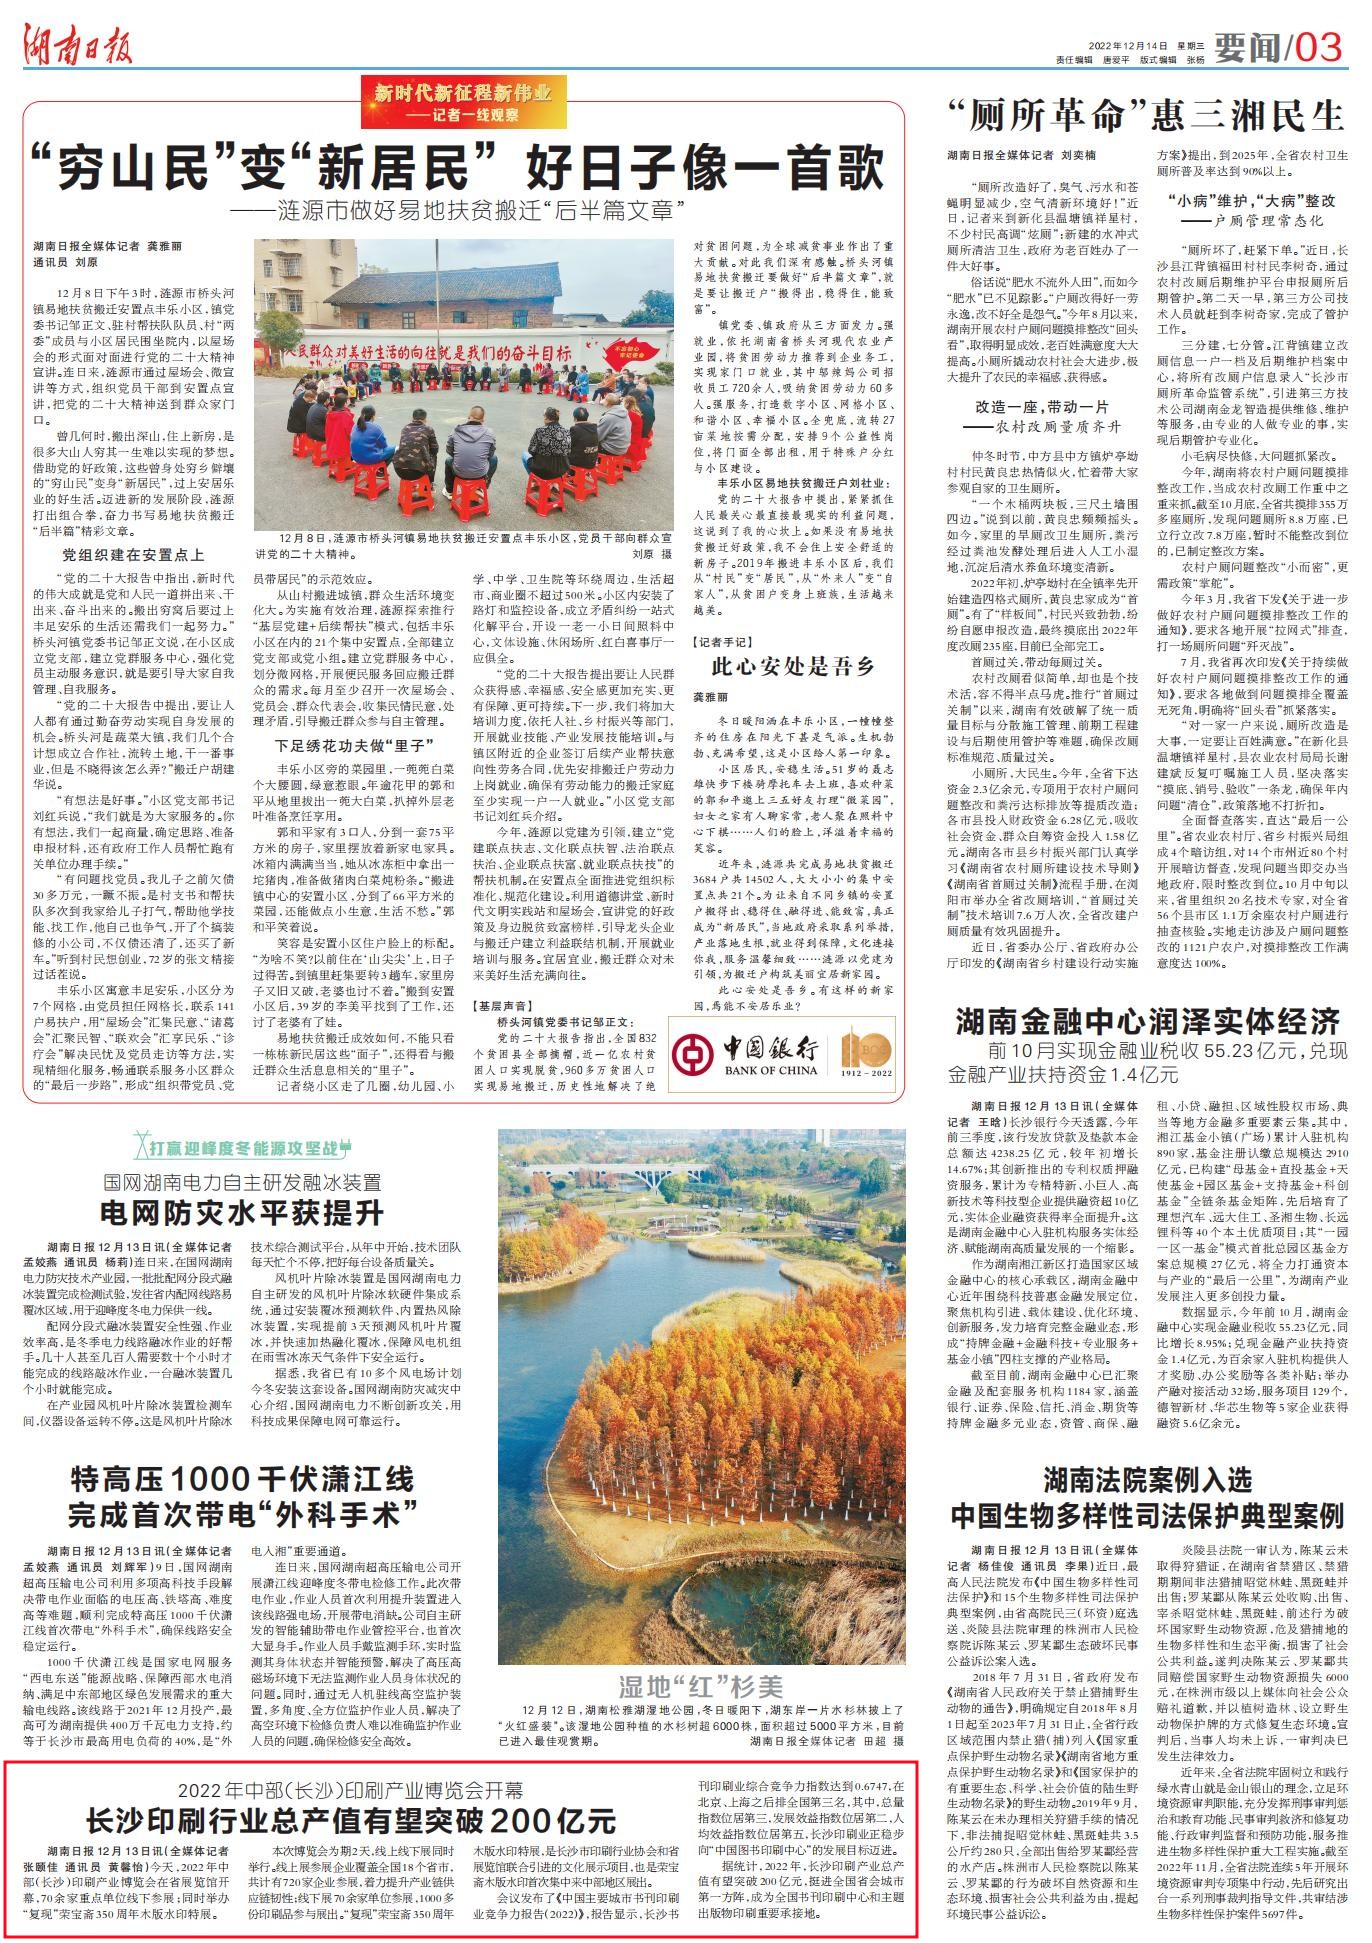 湖南日报|2022年中部（长沙）印刷产业博览会开幕 长沙印刷行业总产值有望突破200亿元